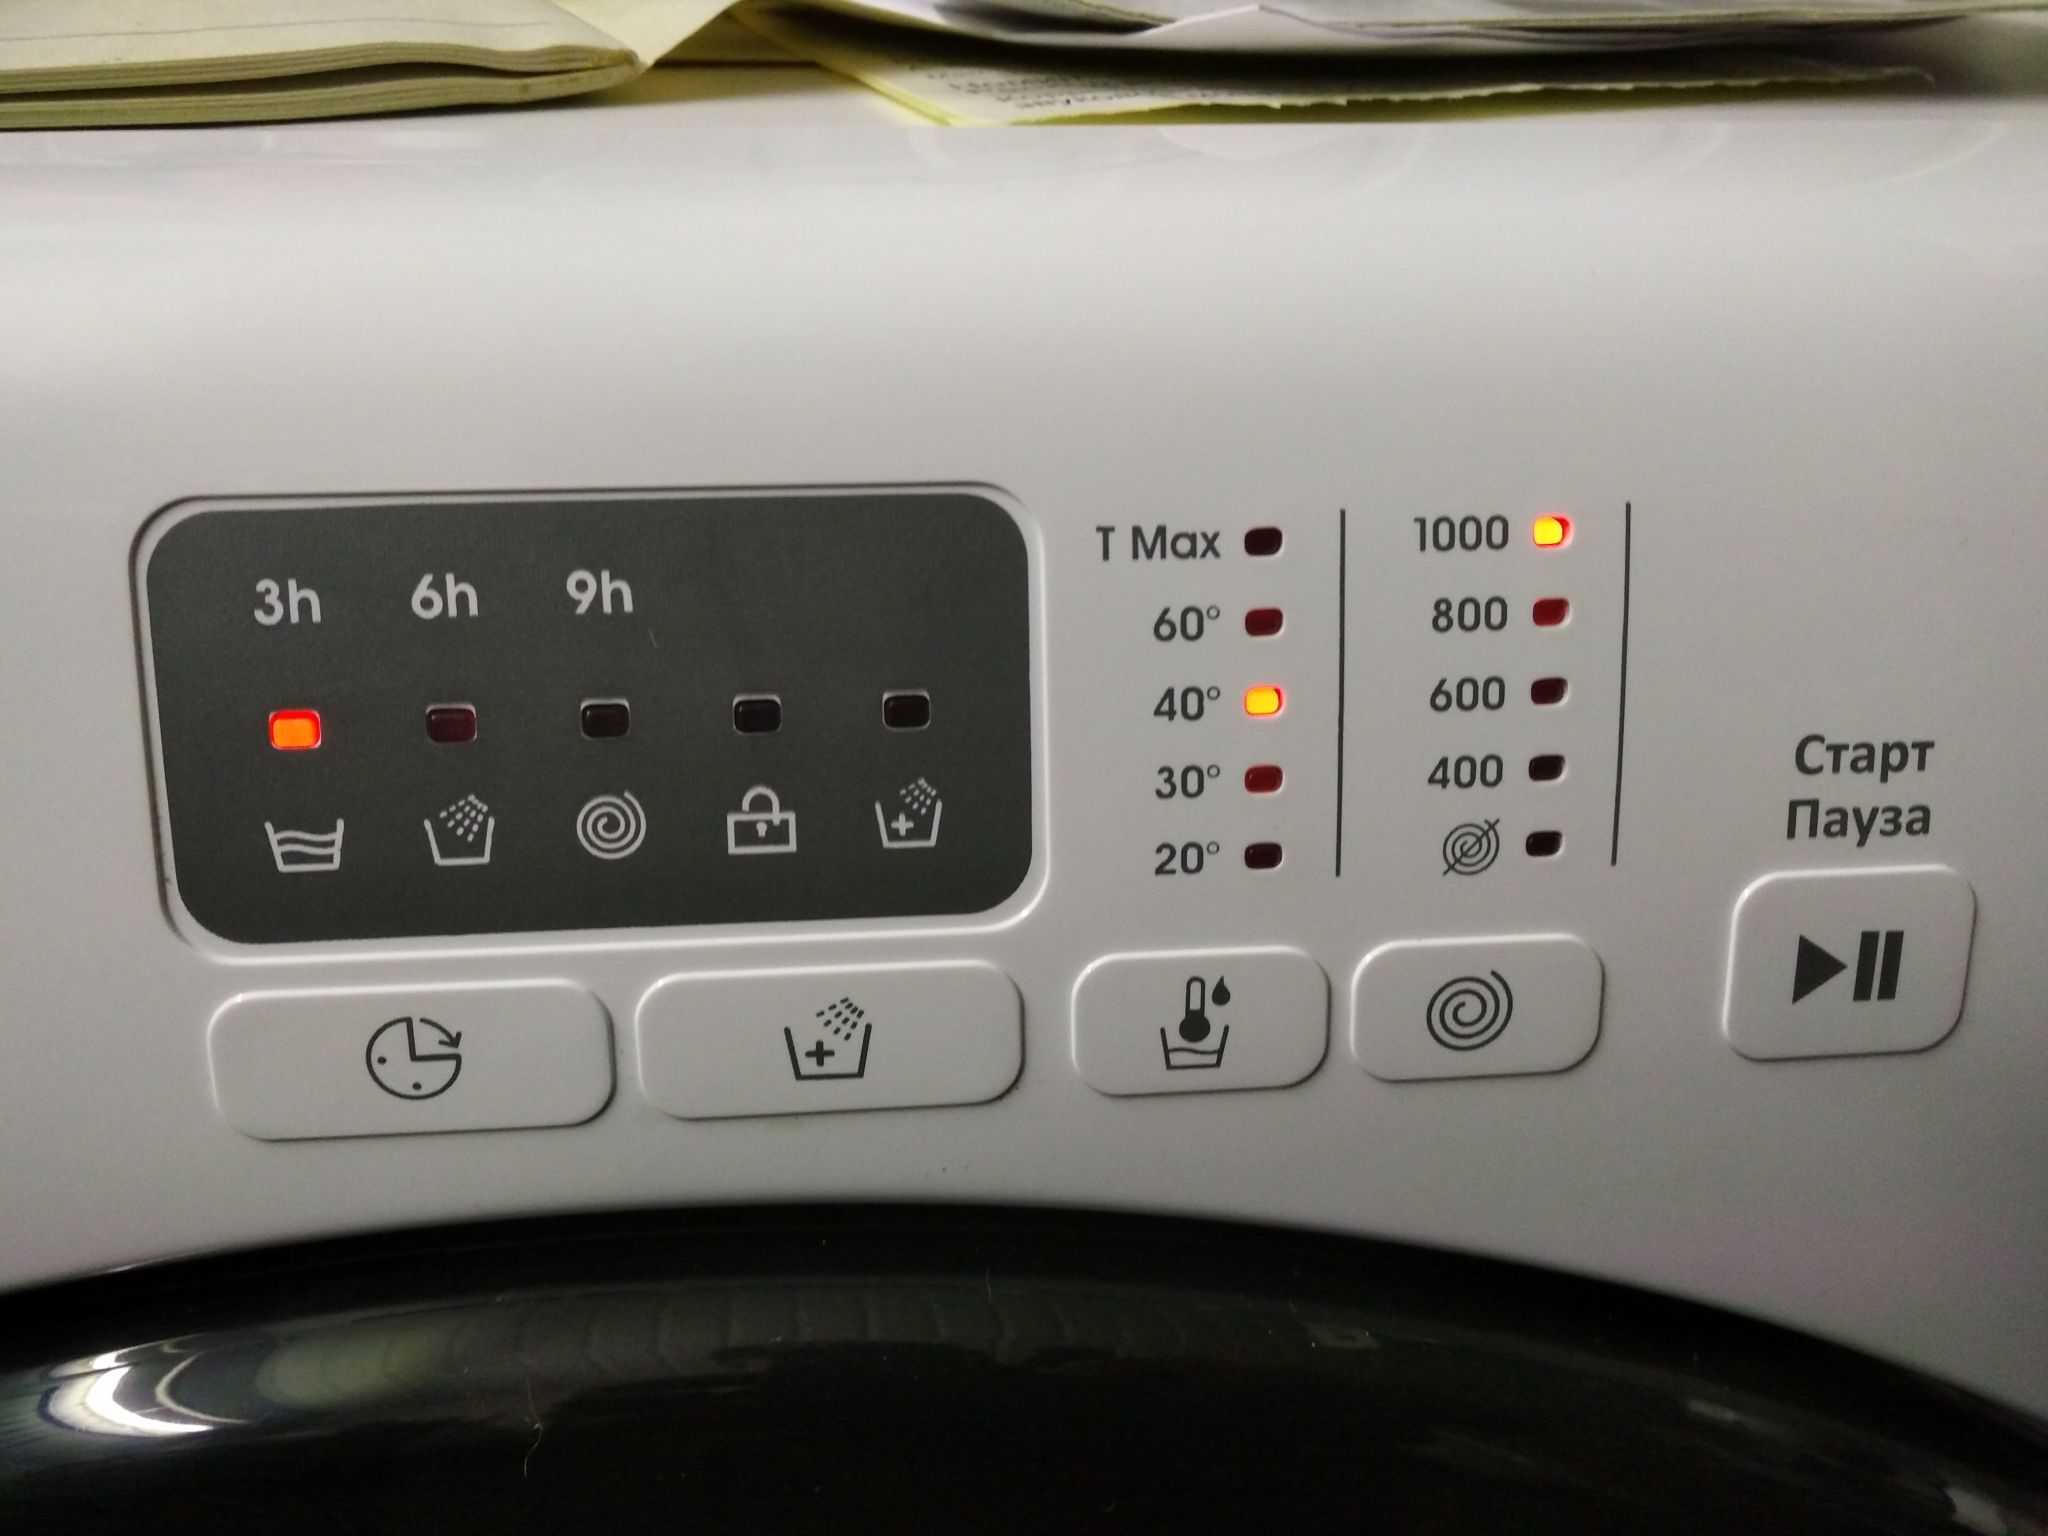 Как разобрать стиральную машину Candy Разборка стиральной машины своими руками: как разобрать Самсунг, Аристон, Индезит, Электролюкс, Занусси, Бош и Канди